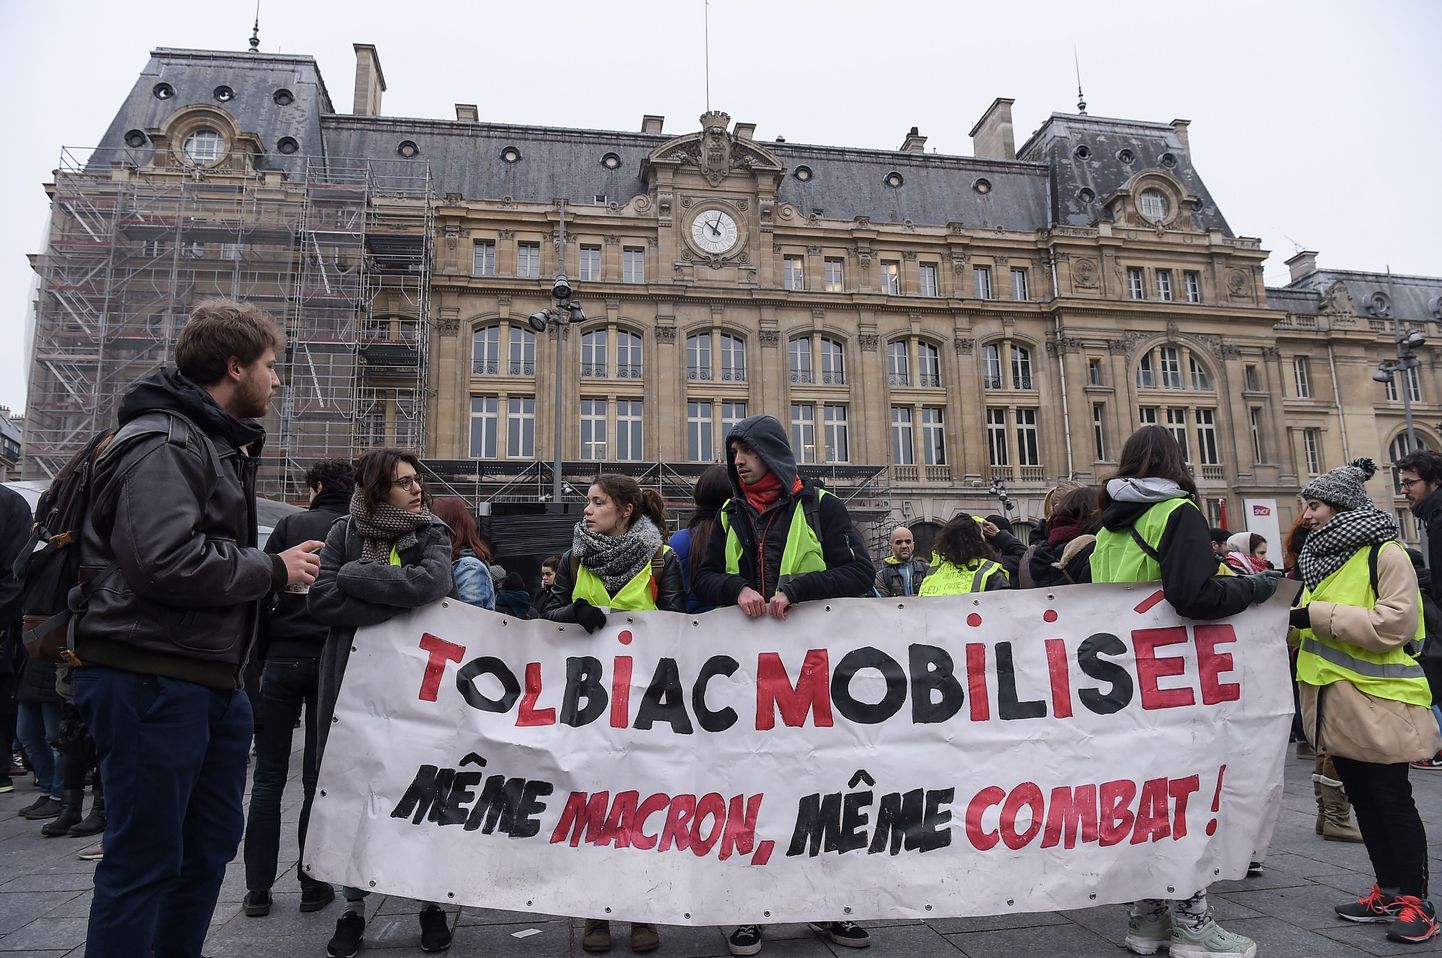 Prantsuse presidendi Emmanuel Macroni vastased meeleavaldused Prantsusmaal Pariisis.